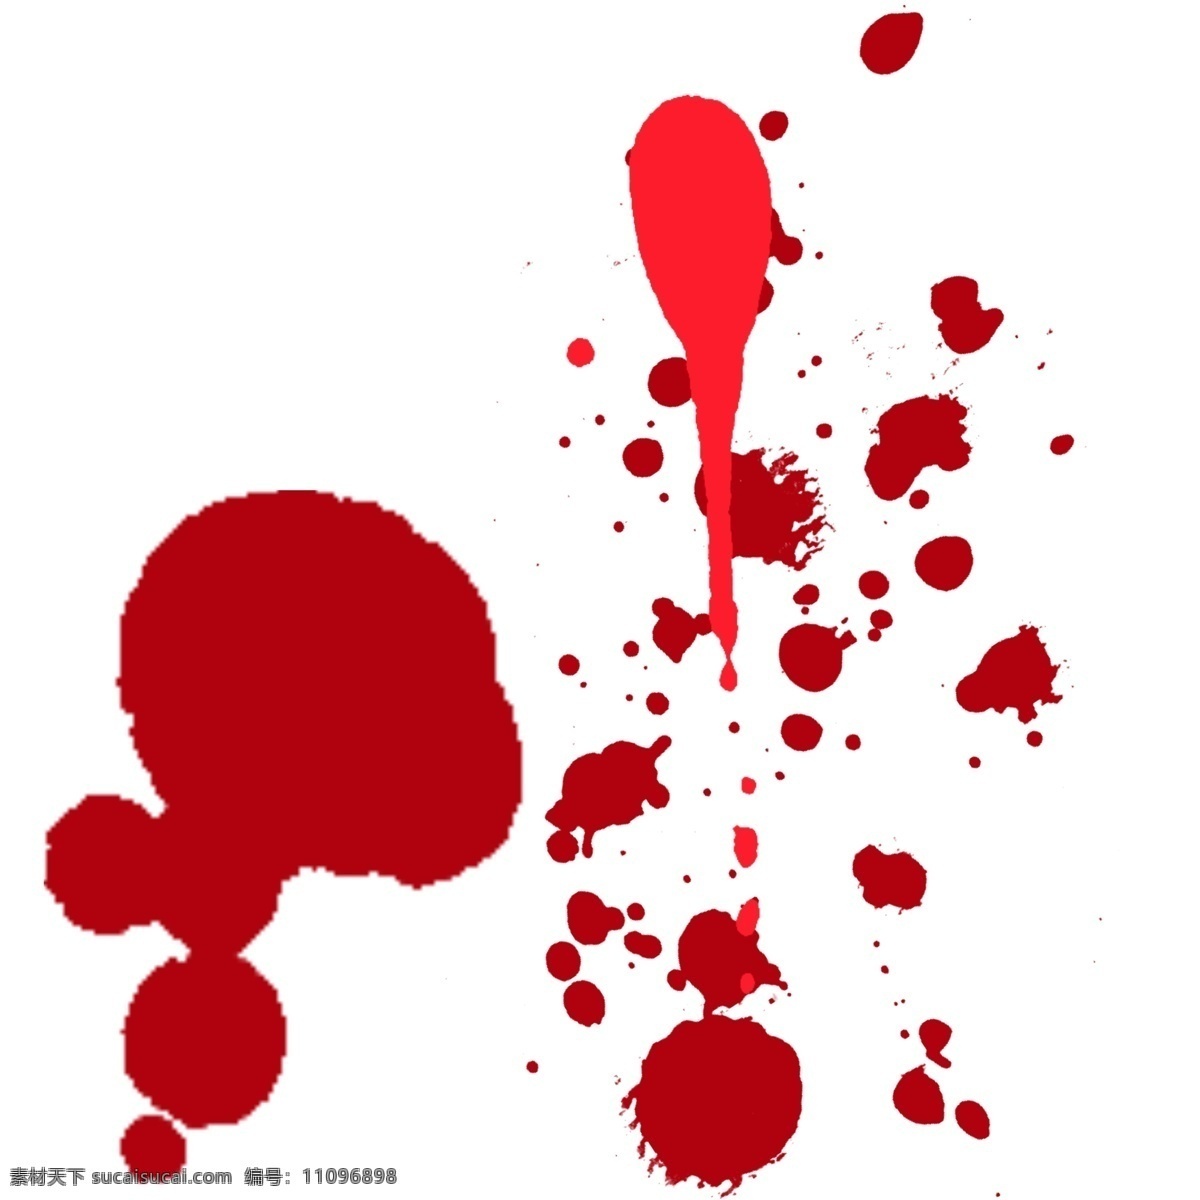 红色 血迹 污渍 元素 水彩 泼墨 抽象 装饰 血 滴 载体 血滴 喷溅 血痕 痕迹 笔刷 红色血迹